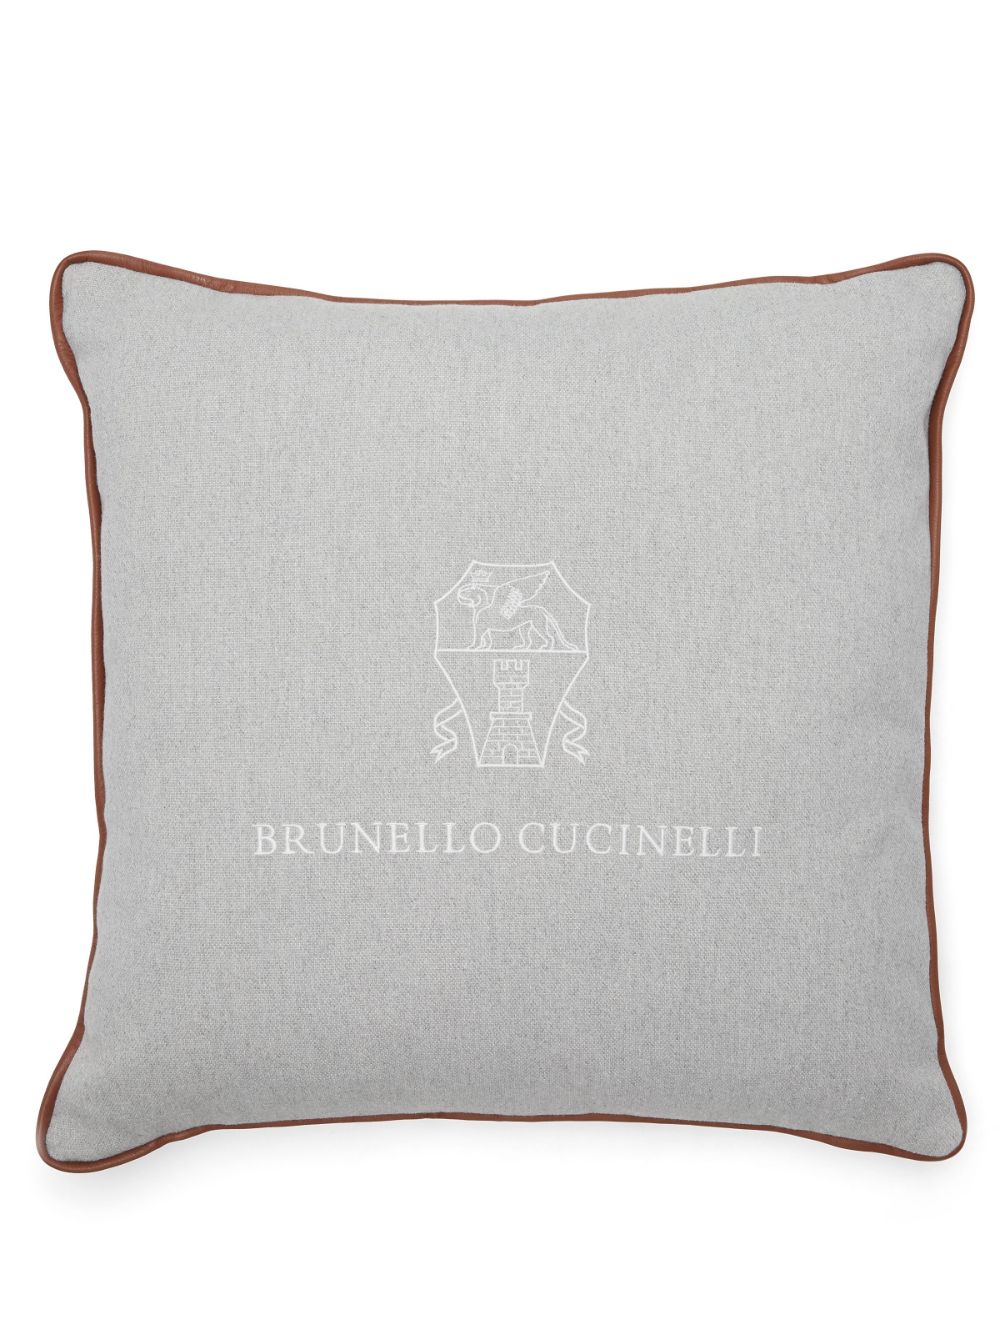 Brunello Cucinelli logo-embroidered cushion - Grey von Brunello Cucinelli